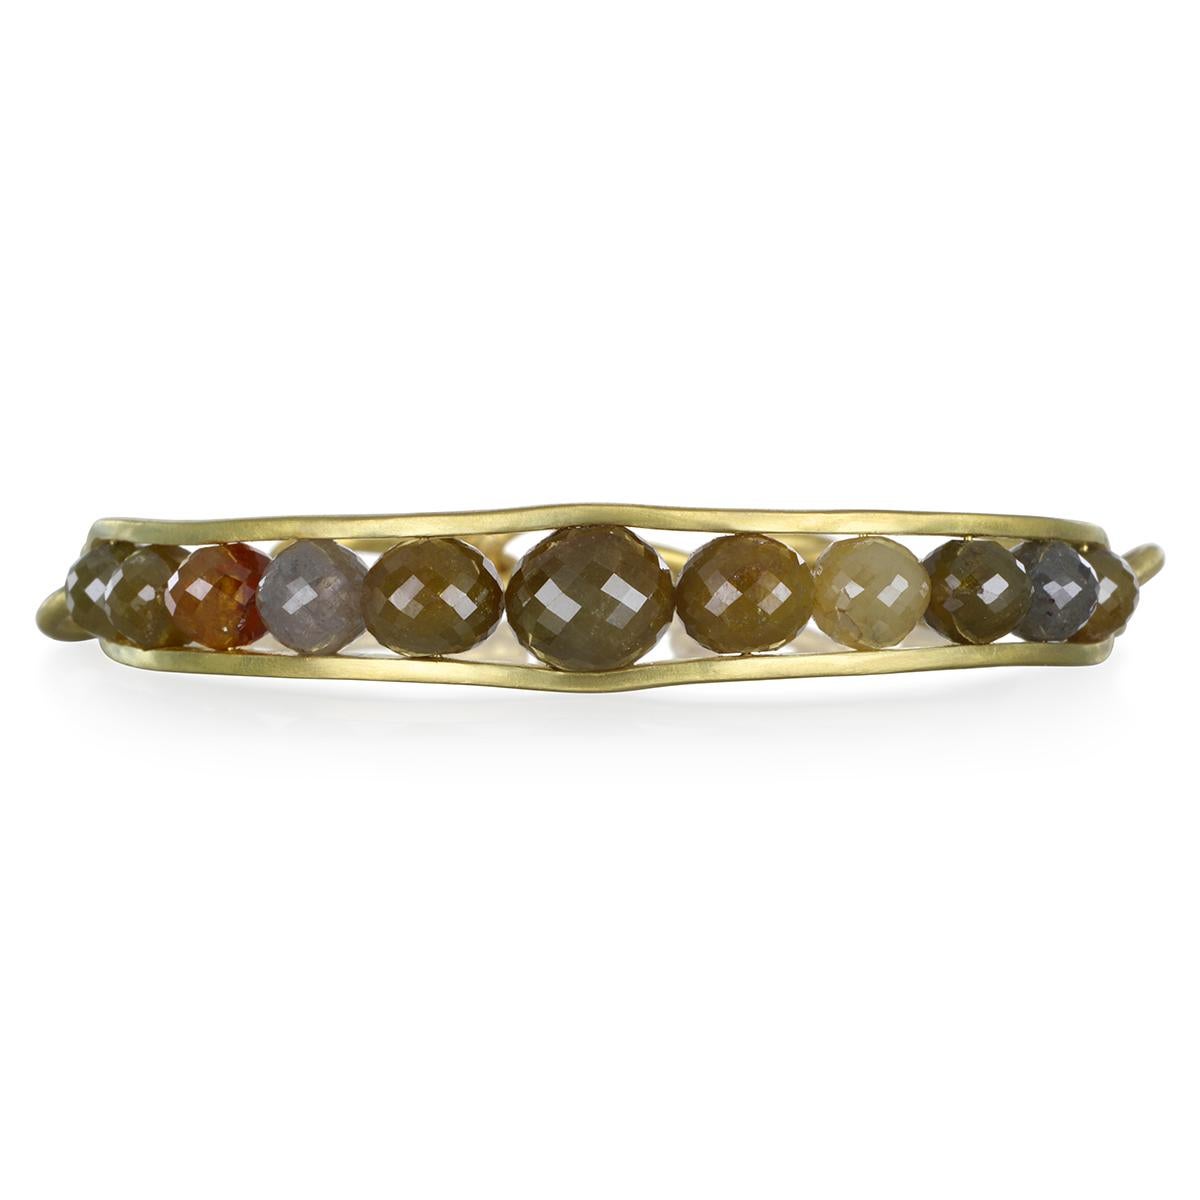 Unique en son genre, le bracelet-bracelet en or 18 carats et diamants bruts de Faye Kim a à la fois du style et de la substance.  Fabriqué à la main avec des perles en diamant brut multicolores, dont la taille est légèrement graduée.  Finition avec